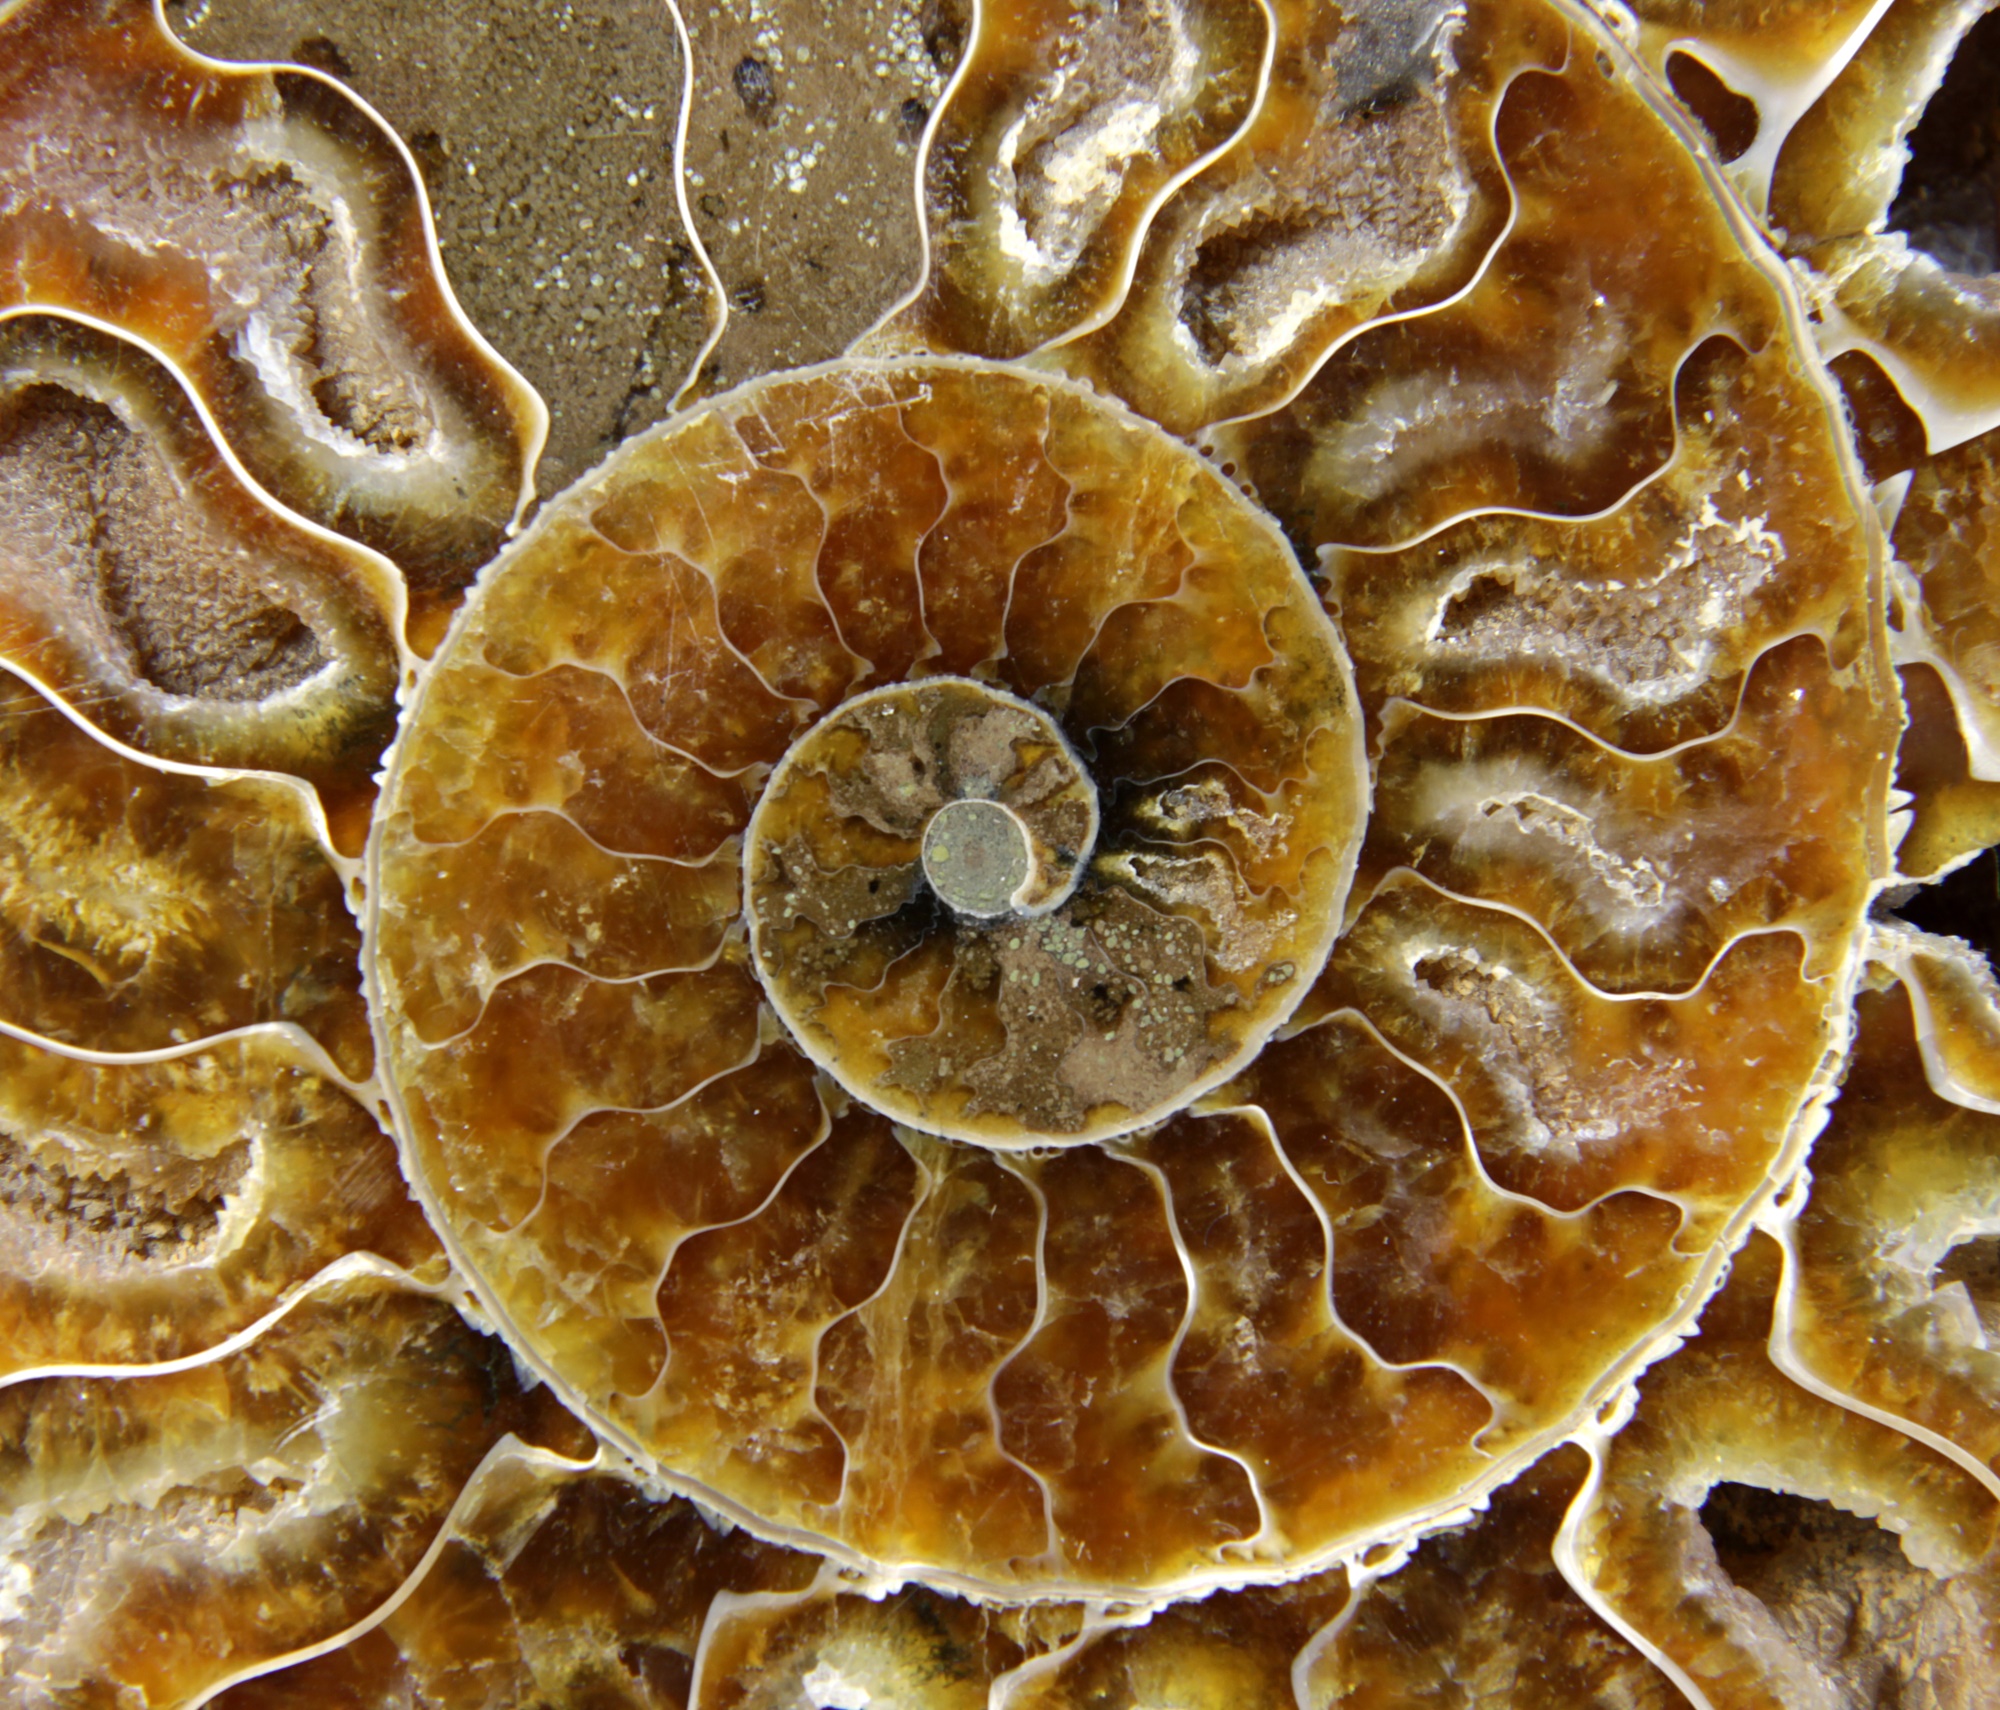 אמונייט מאובנת בצילום מקרוב.
An extreme closeup of a crustacean fossil.
ממאגר התמונות "דפוזיט".